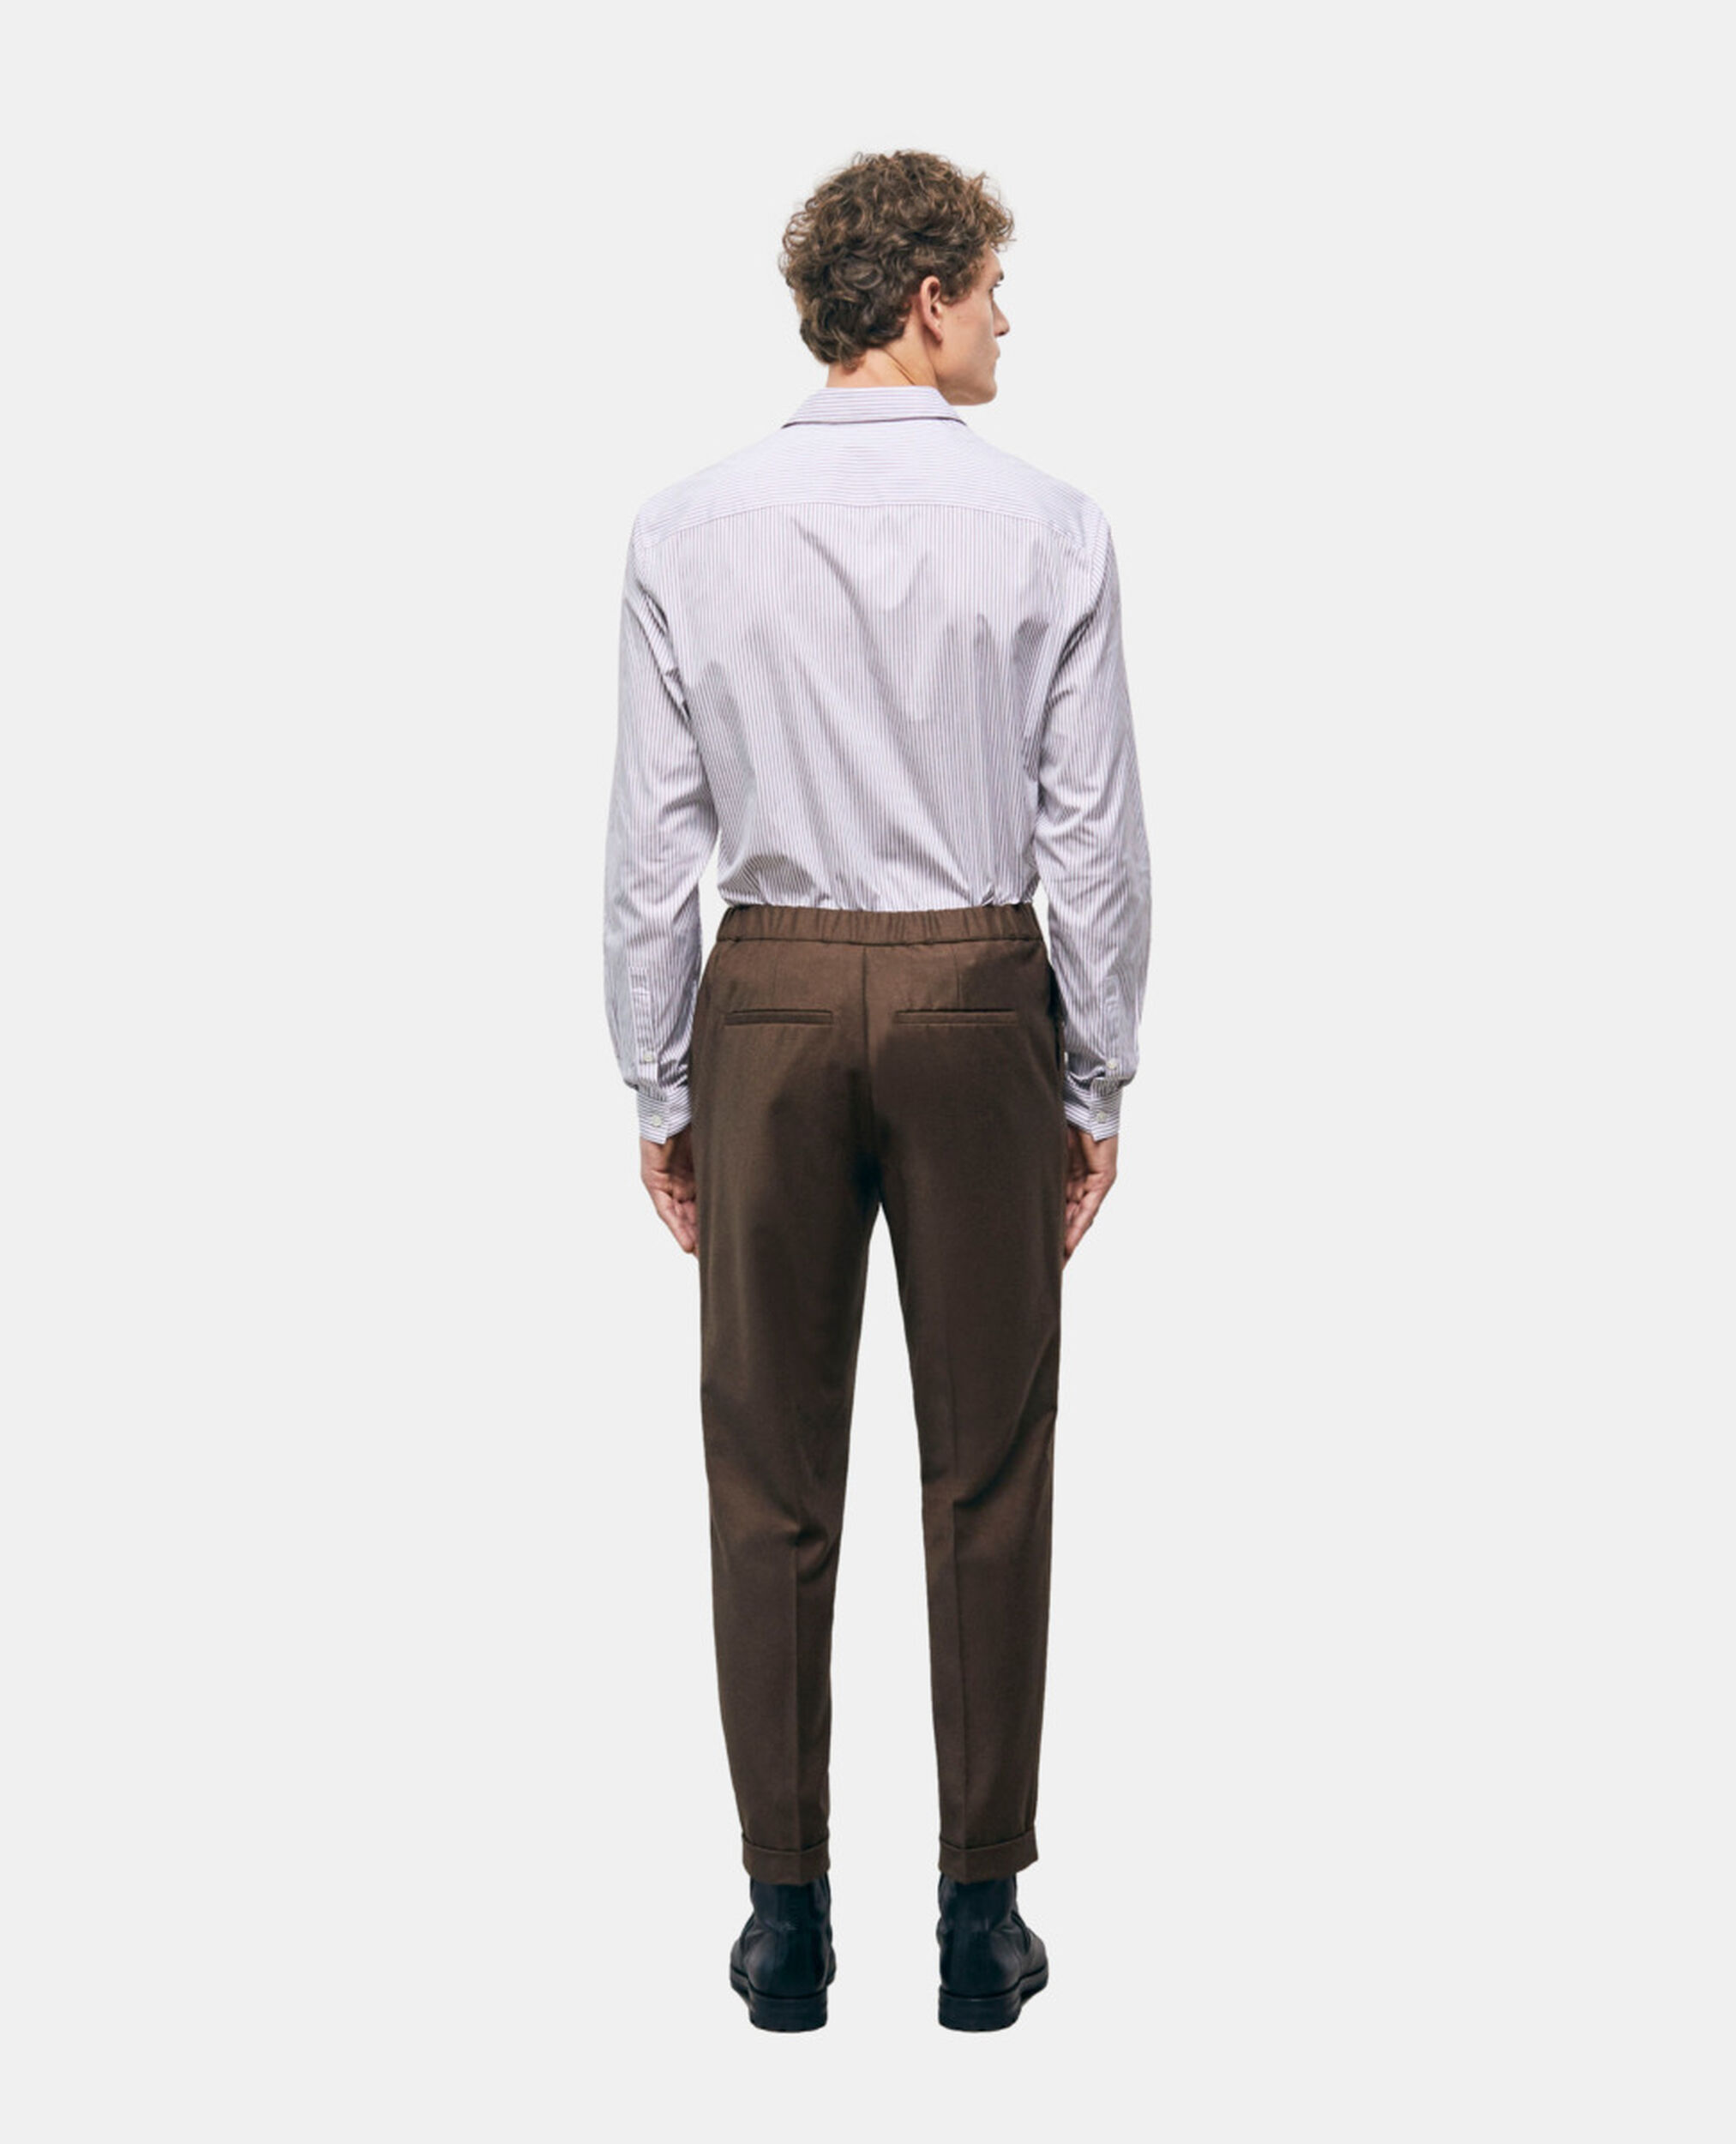 Pantalon en laine marron, BROWN, hi-res image number null